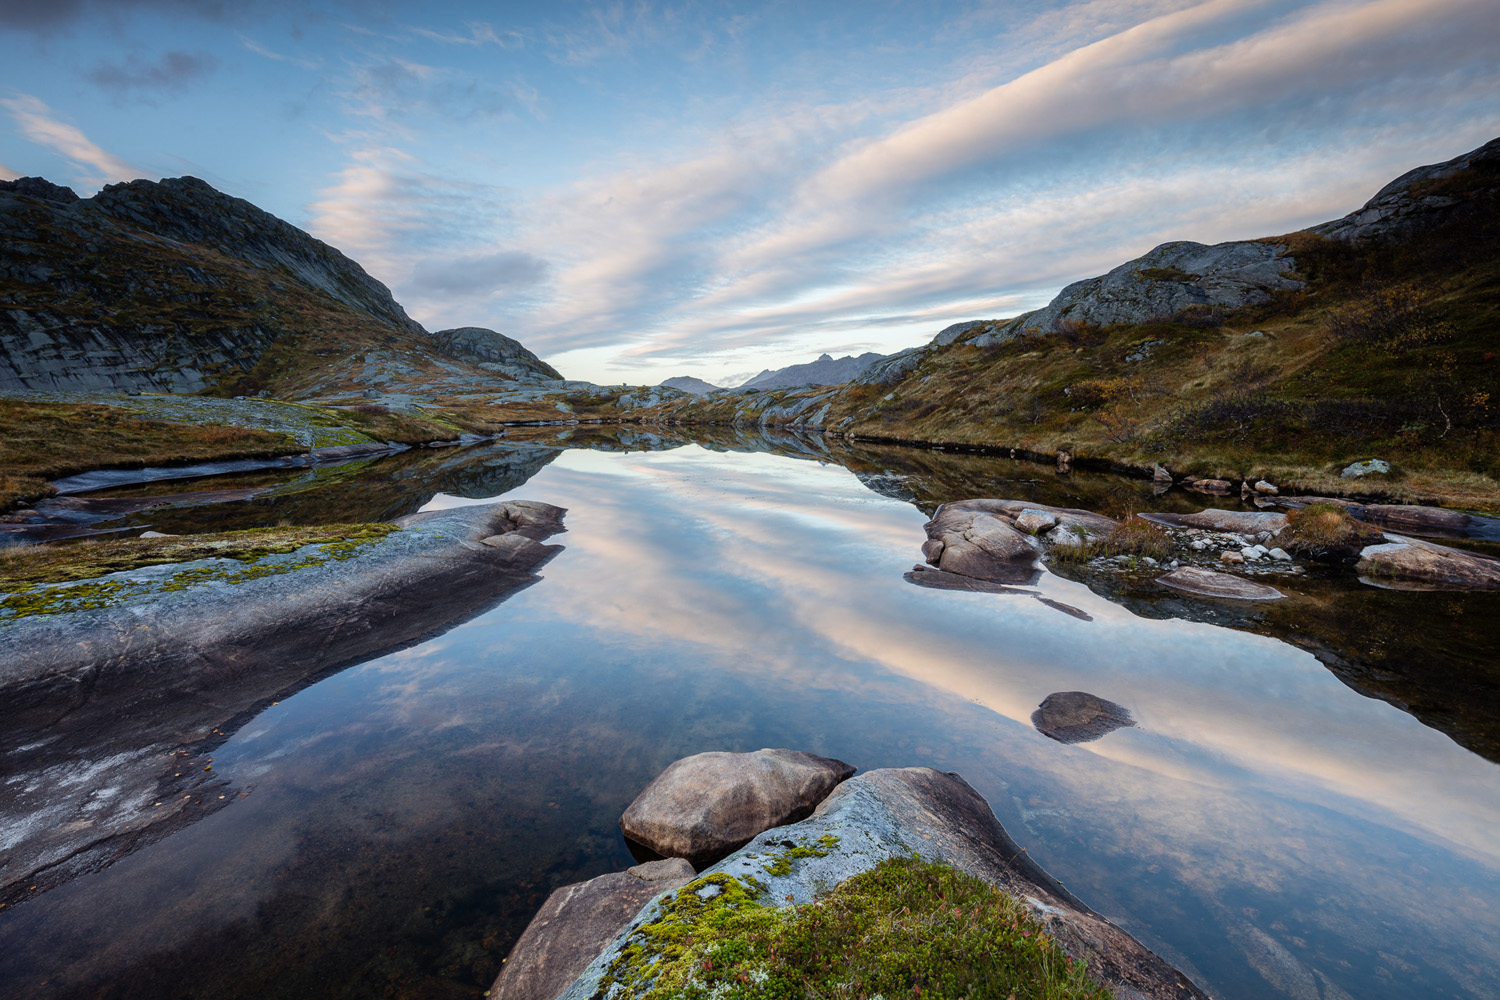 reflet des nuages dans un petit lac dans les îles Lofoten, pendant un voyage photo en Norvège